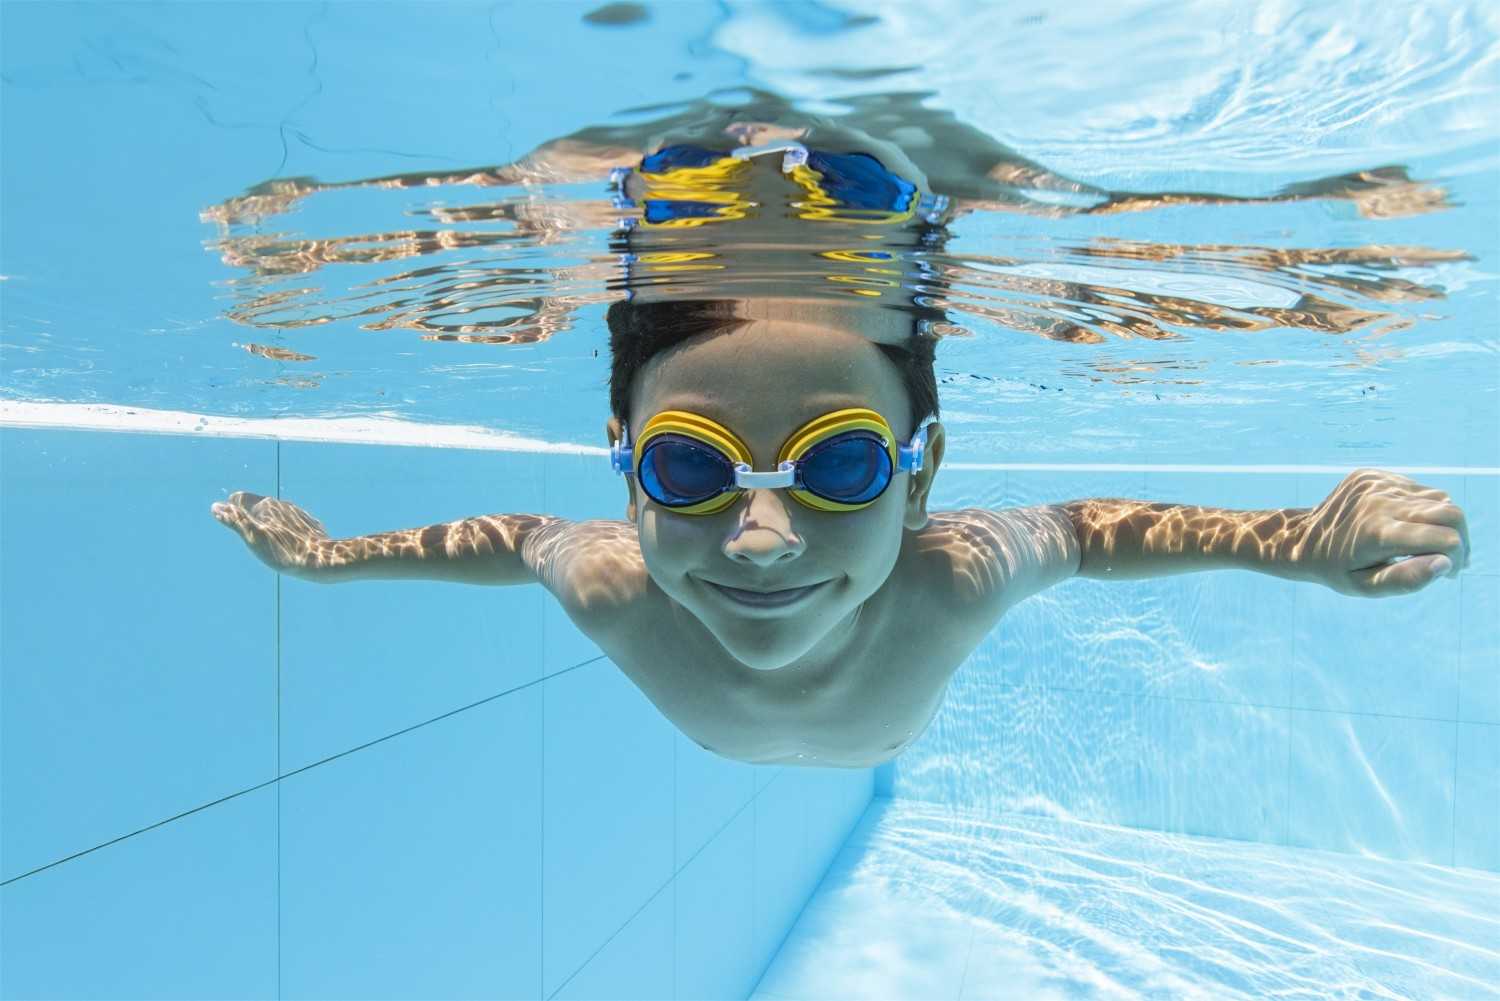 Bestway Hydro-Swim plaukimo akiniai, mėlyni